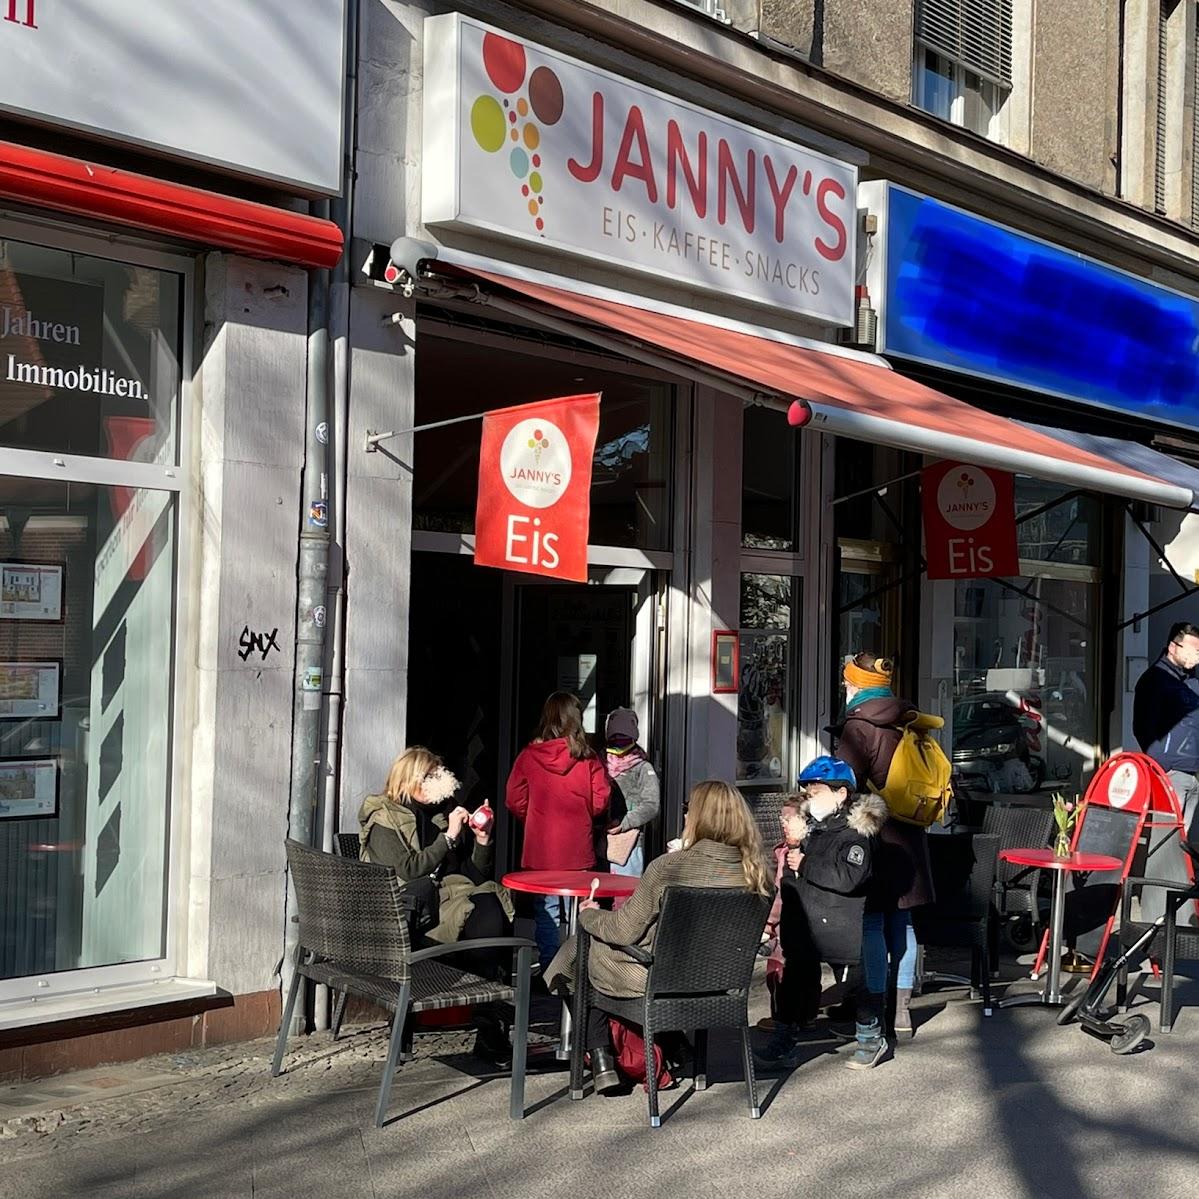 Restaurant "Jannys Eis" in Berlin